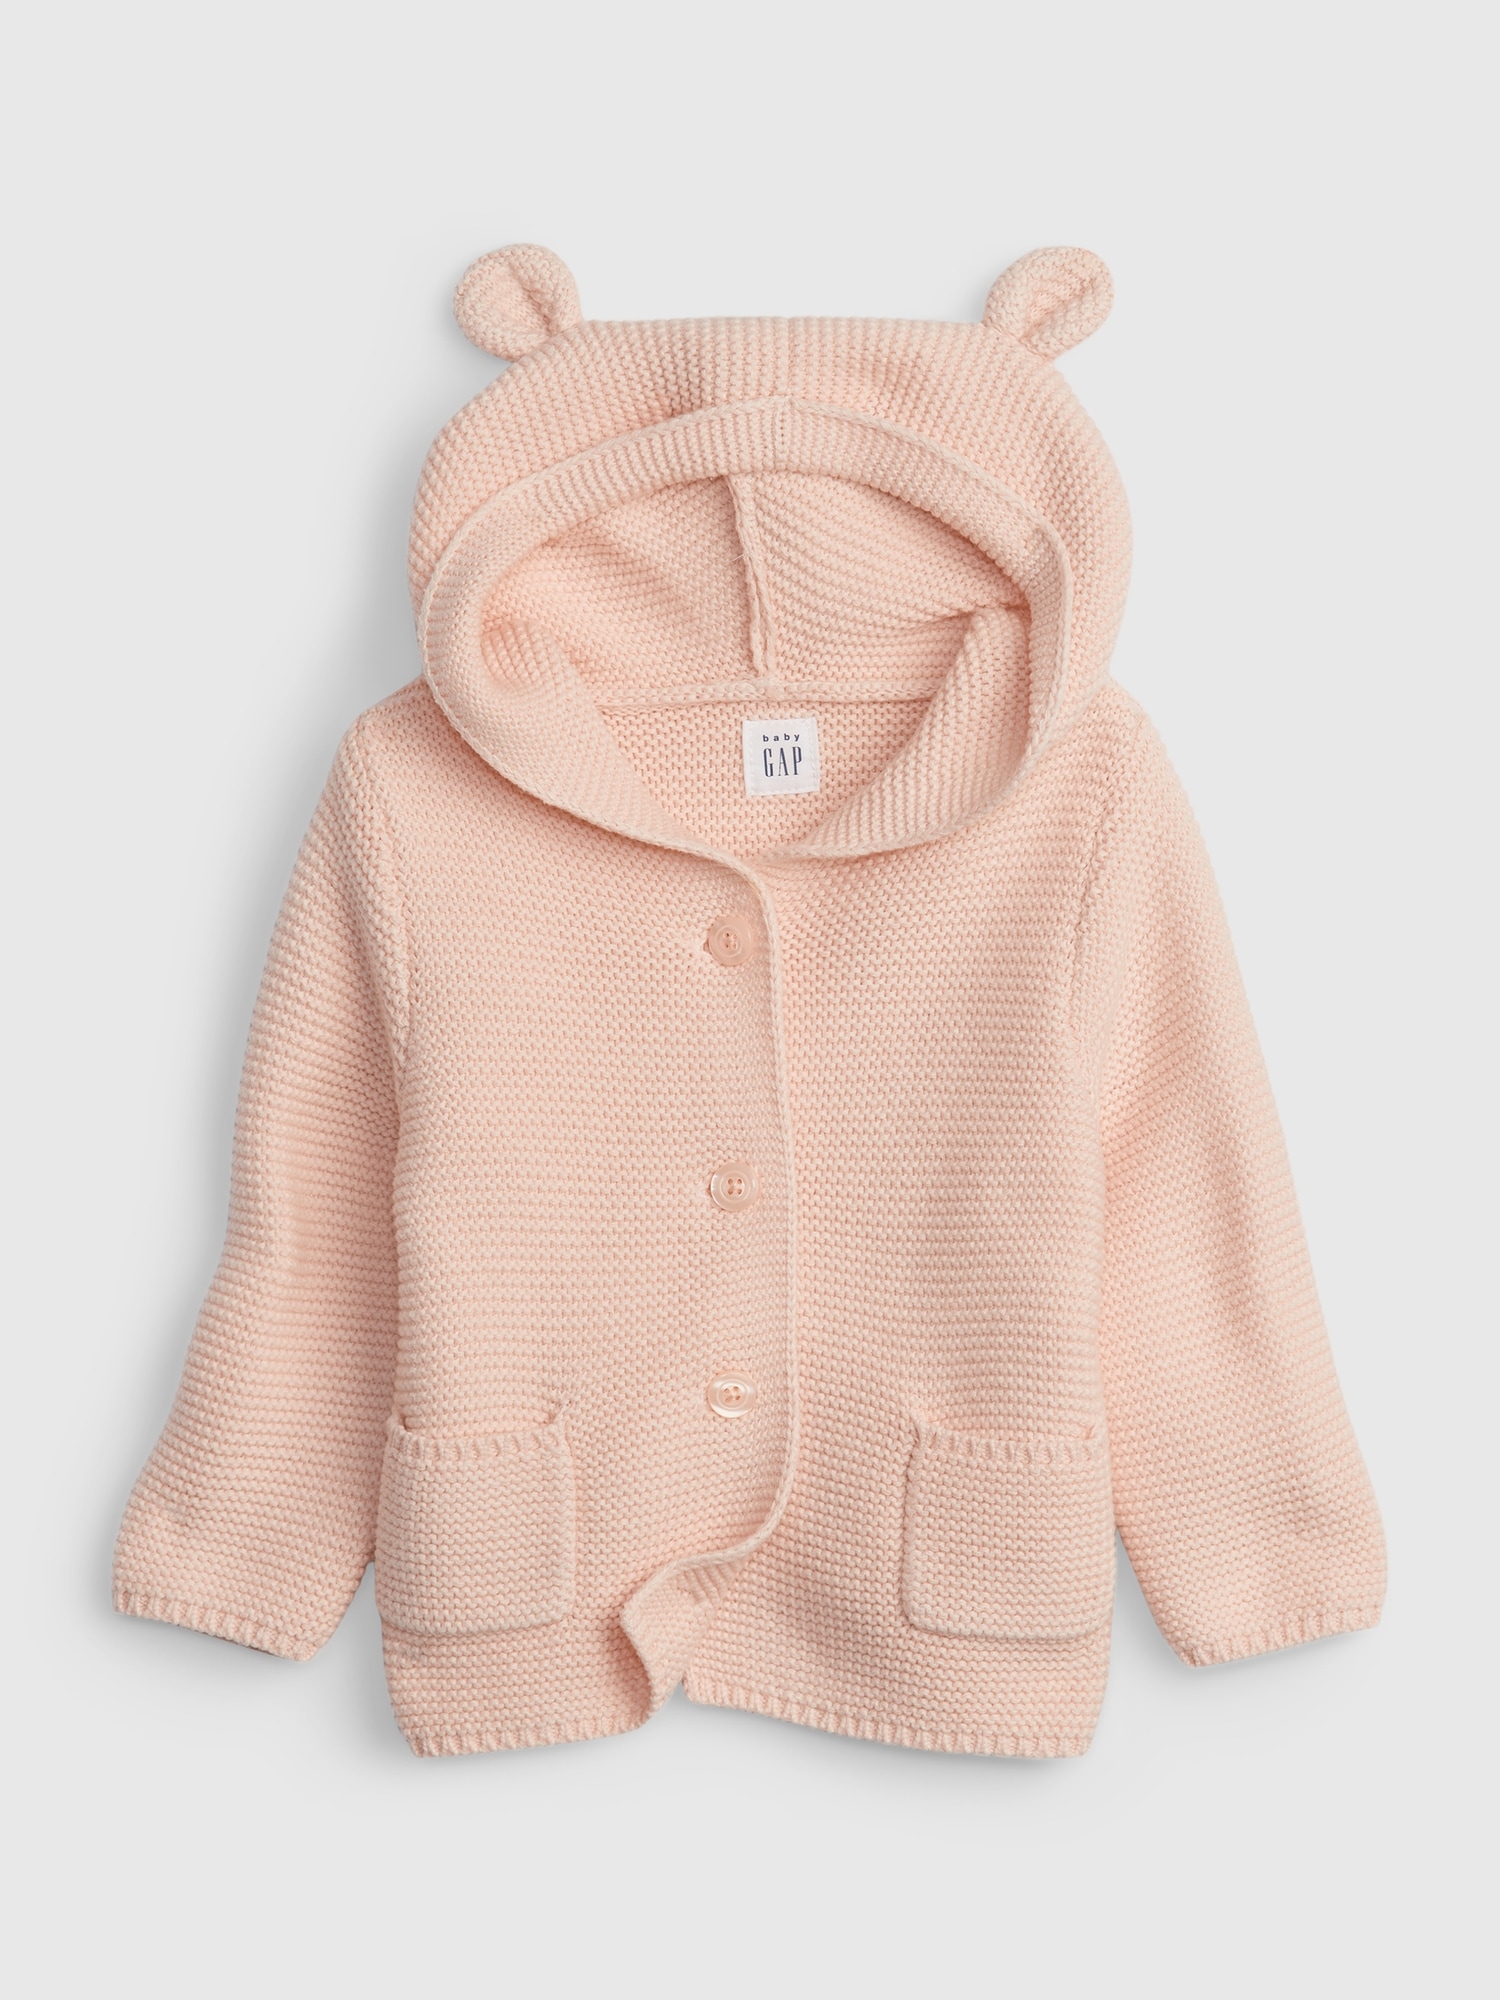 NEW Gap Baby Girl Garter Bear Hoodie Cardigan Knit Jacket Pink 3-6 M 0-3 M 